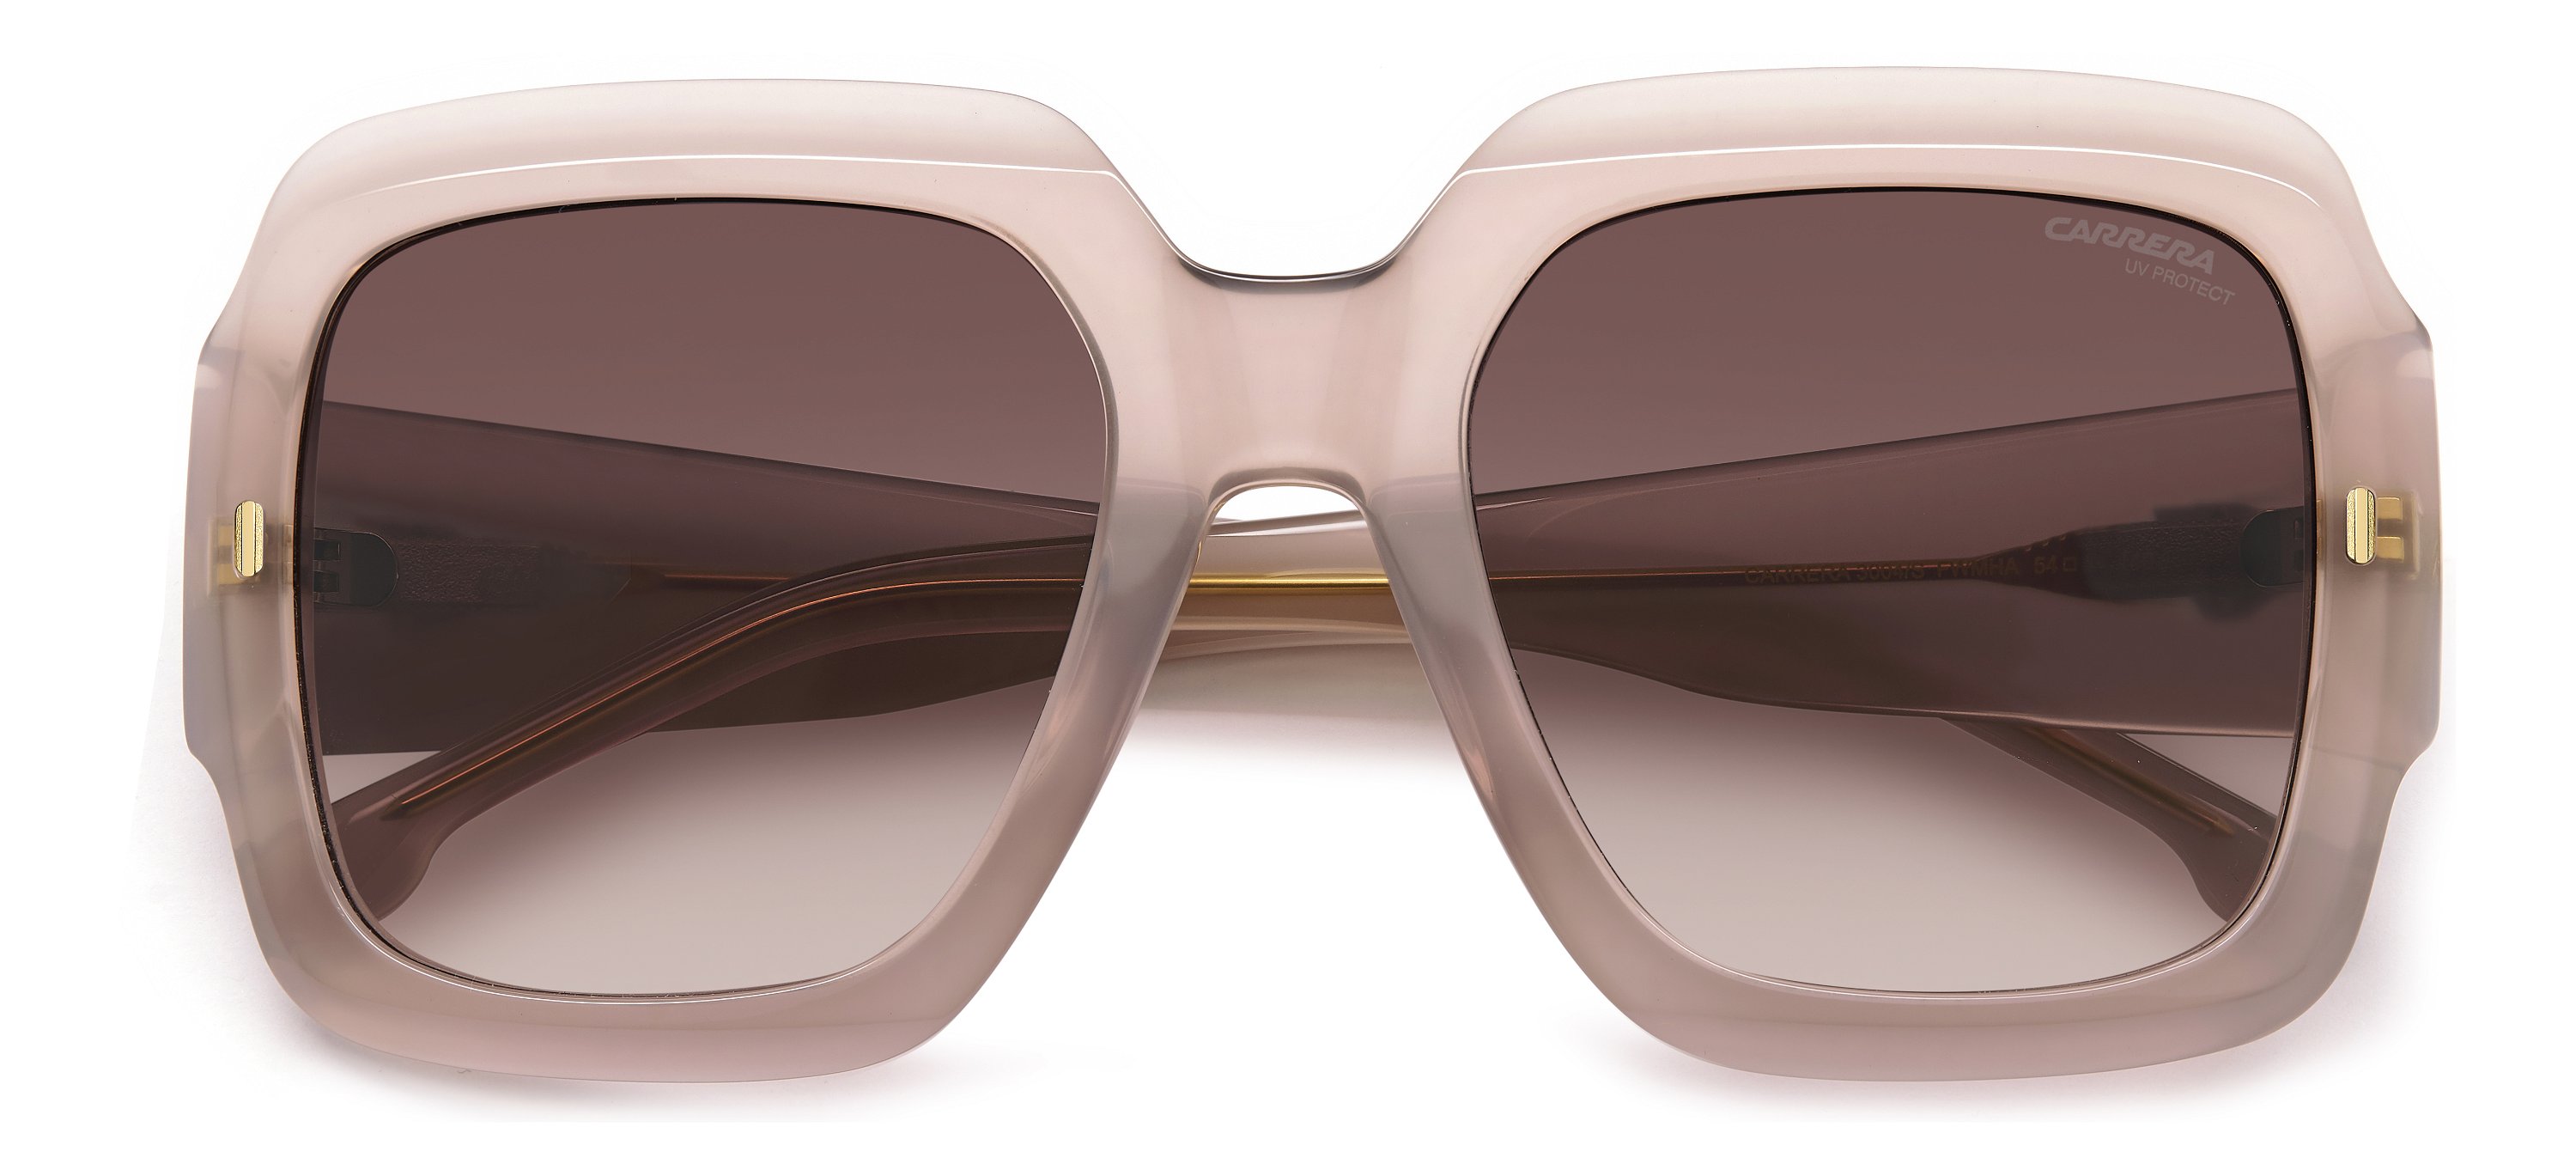 Das Bild zeigt die Sonnenbrille 3004_S von der Marke Carrera in nude.